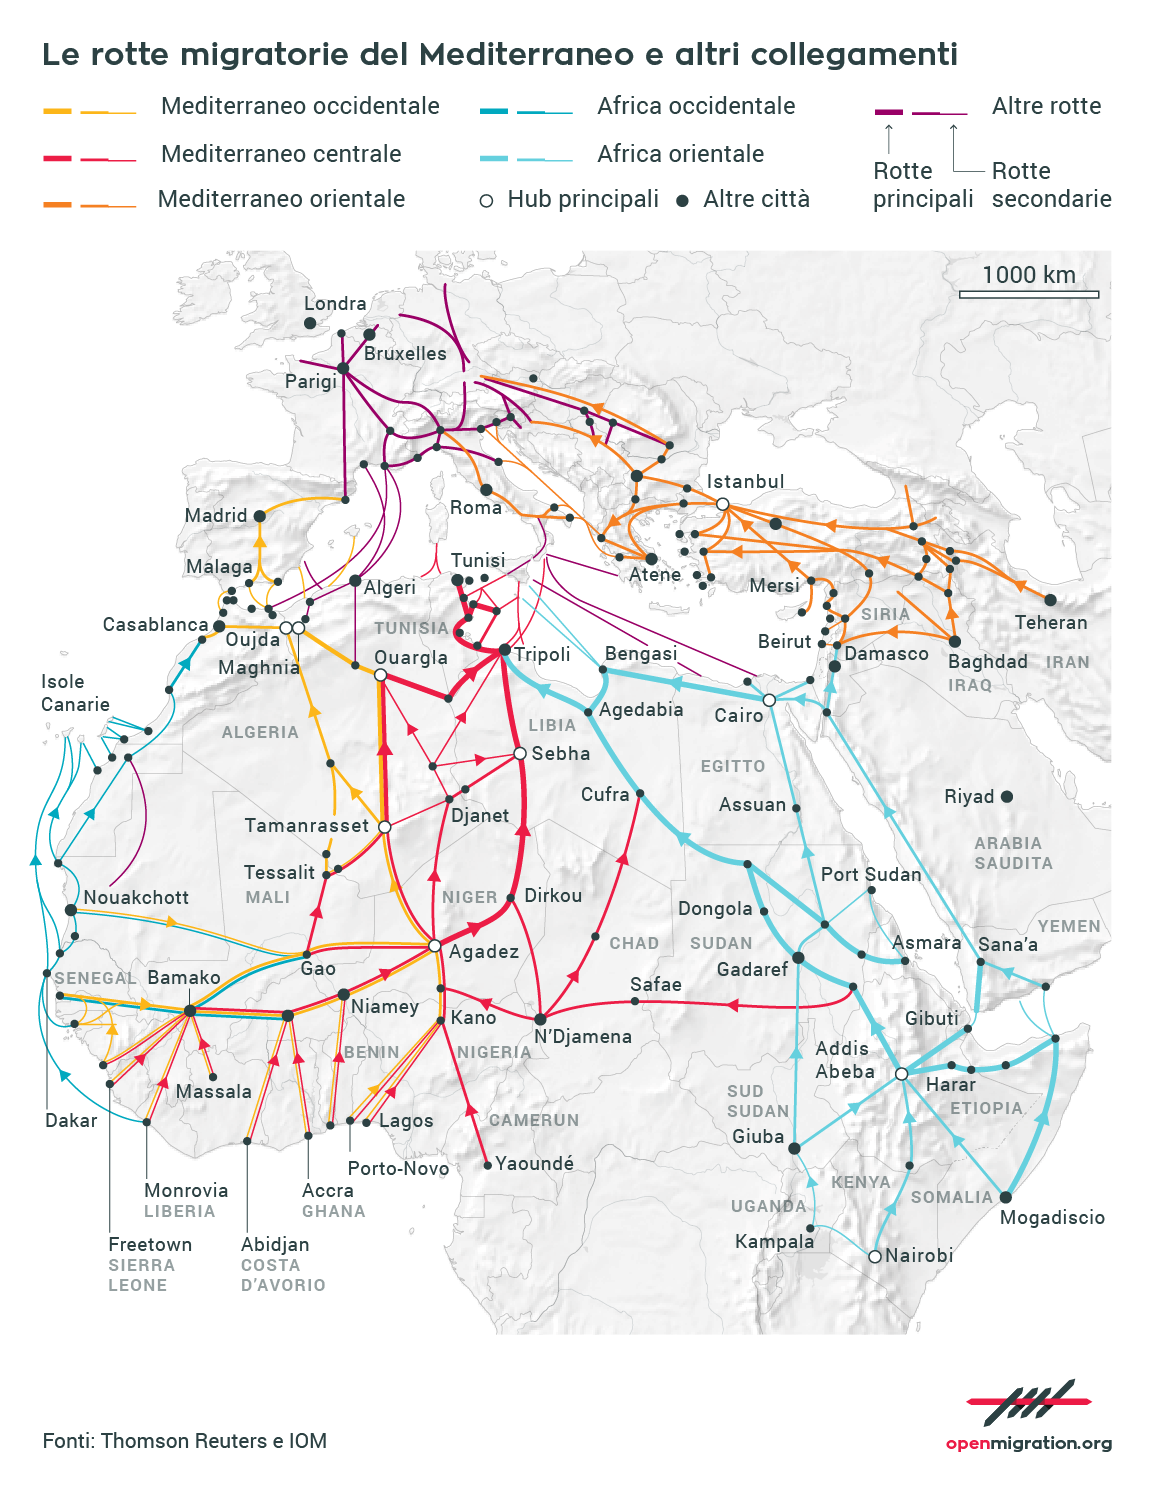 Le rotte migratorie del Mediterraneo e altri collegamenti, 2016